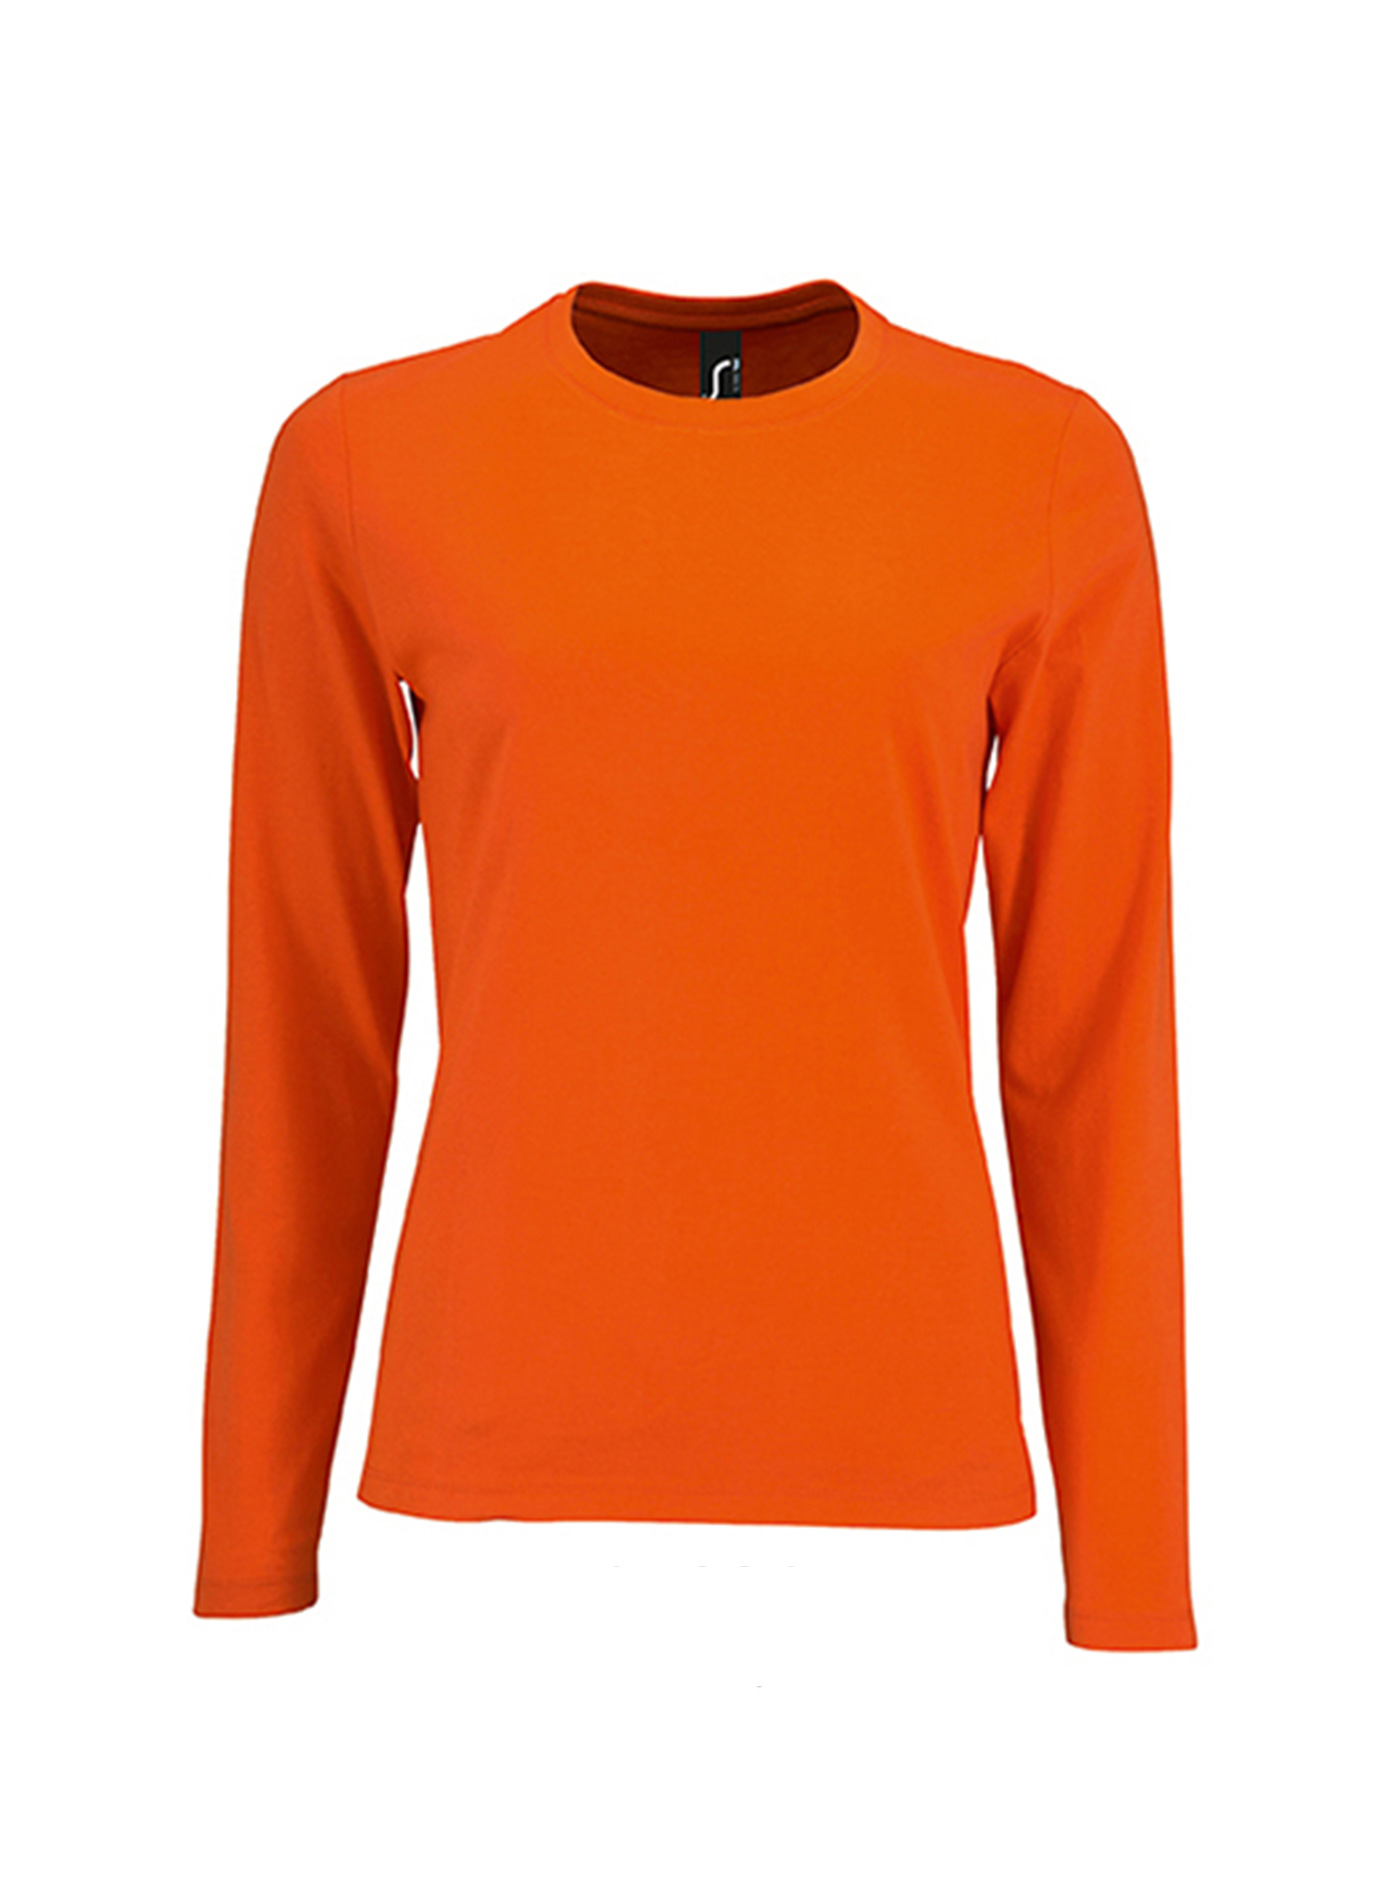 Dámské tričko s dlouhým rukávem SOL´S Imperial - Zářivá oranžová S